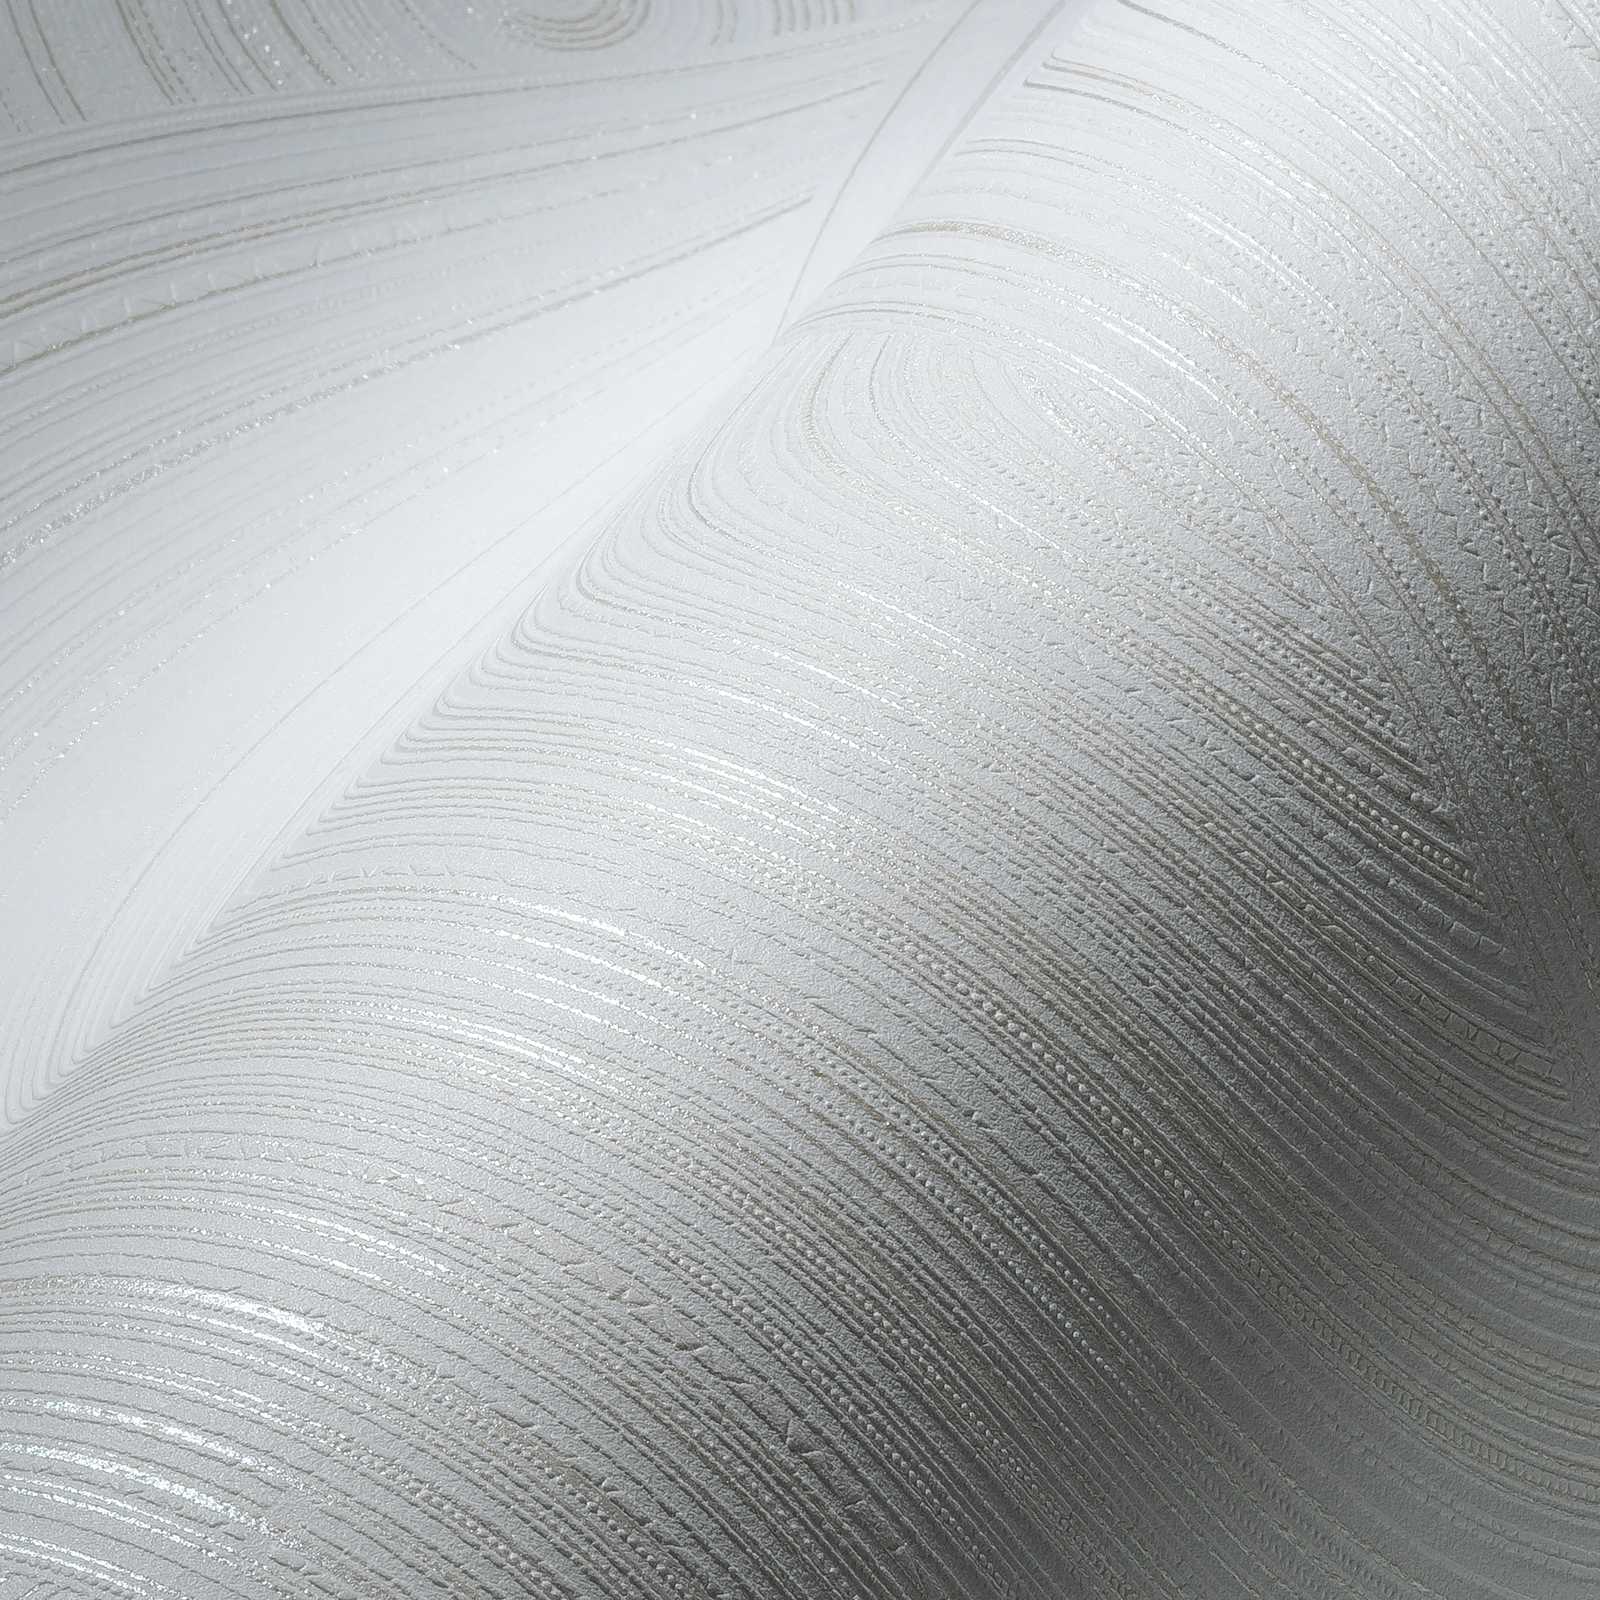             Papier peint intissé motifs circulaires avec surface structurée - blanc
        